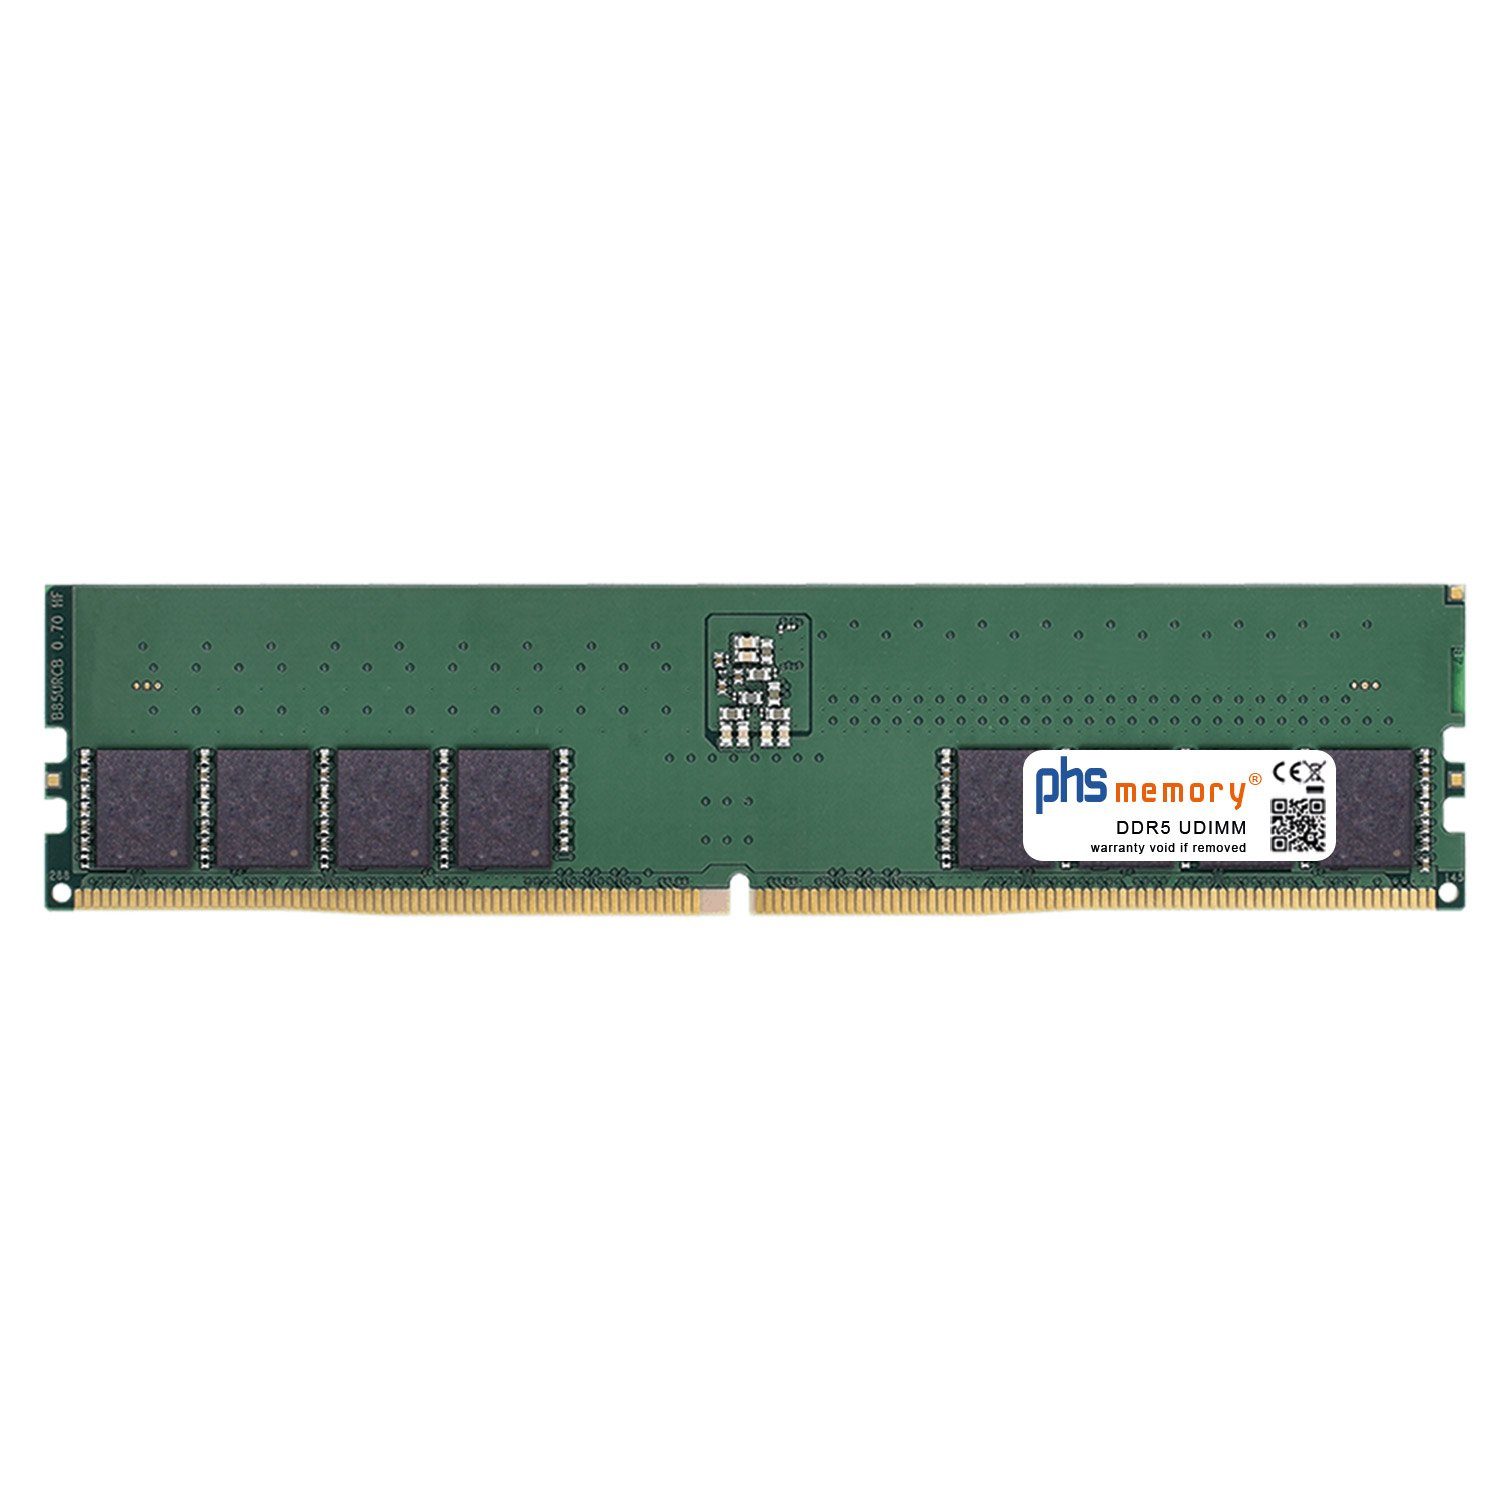 PHS-memory RAM für Captiva Highend Gaming R73-769 Arbeitsspeicher